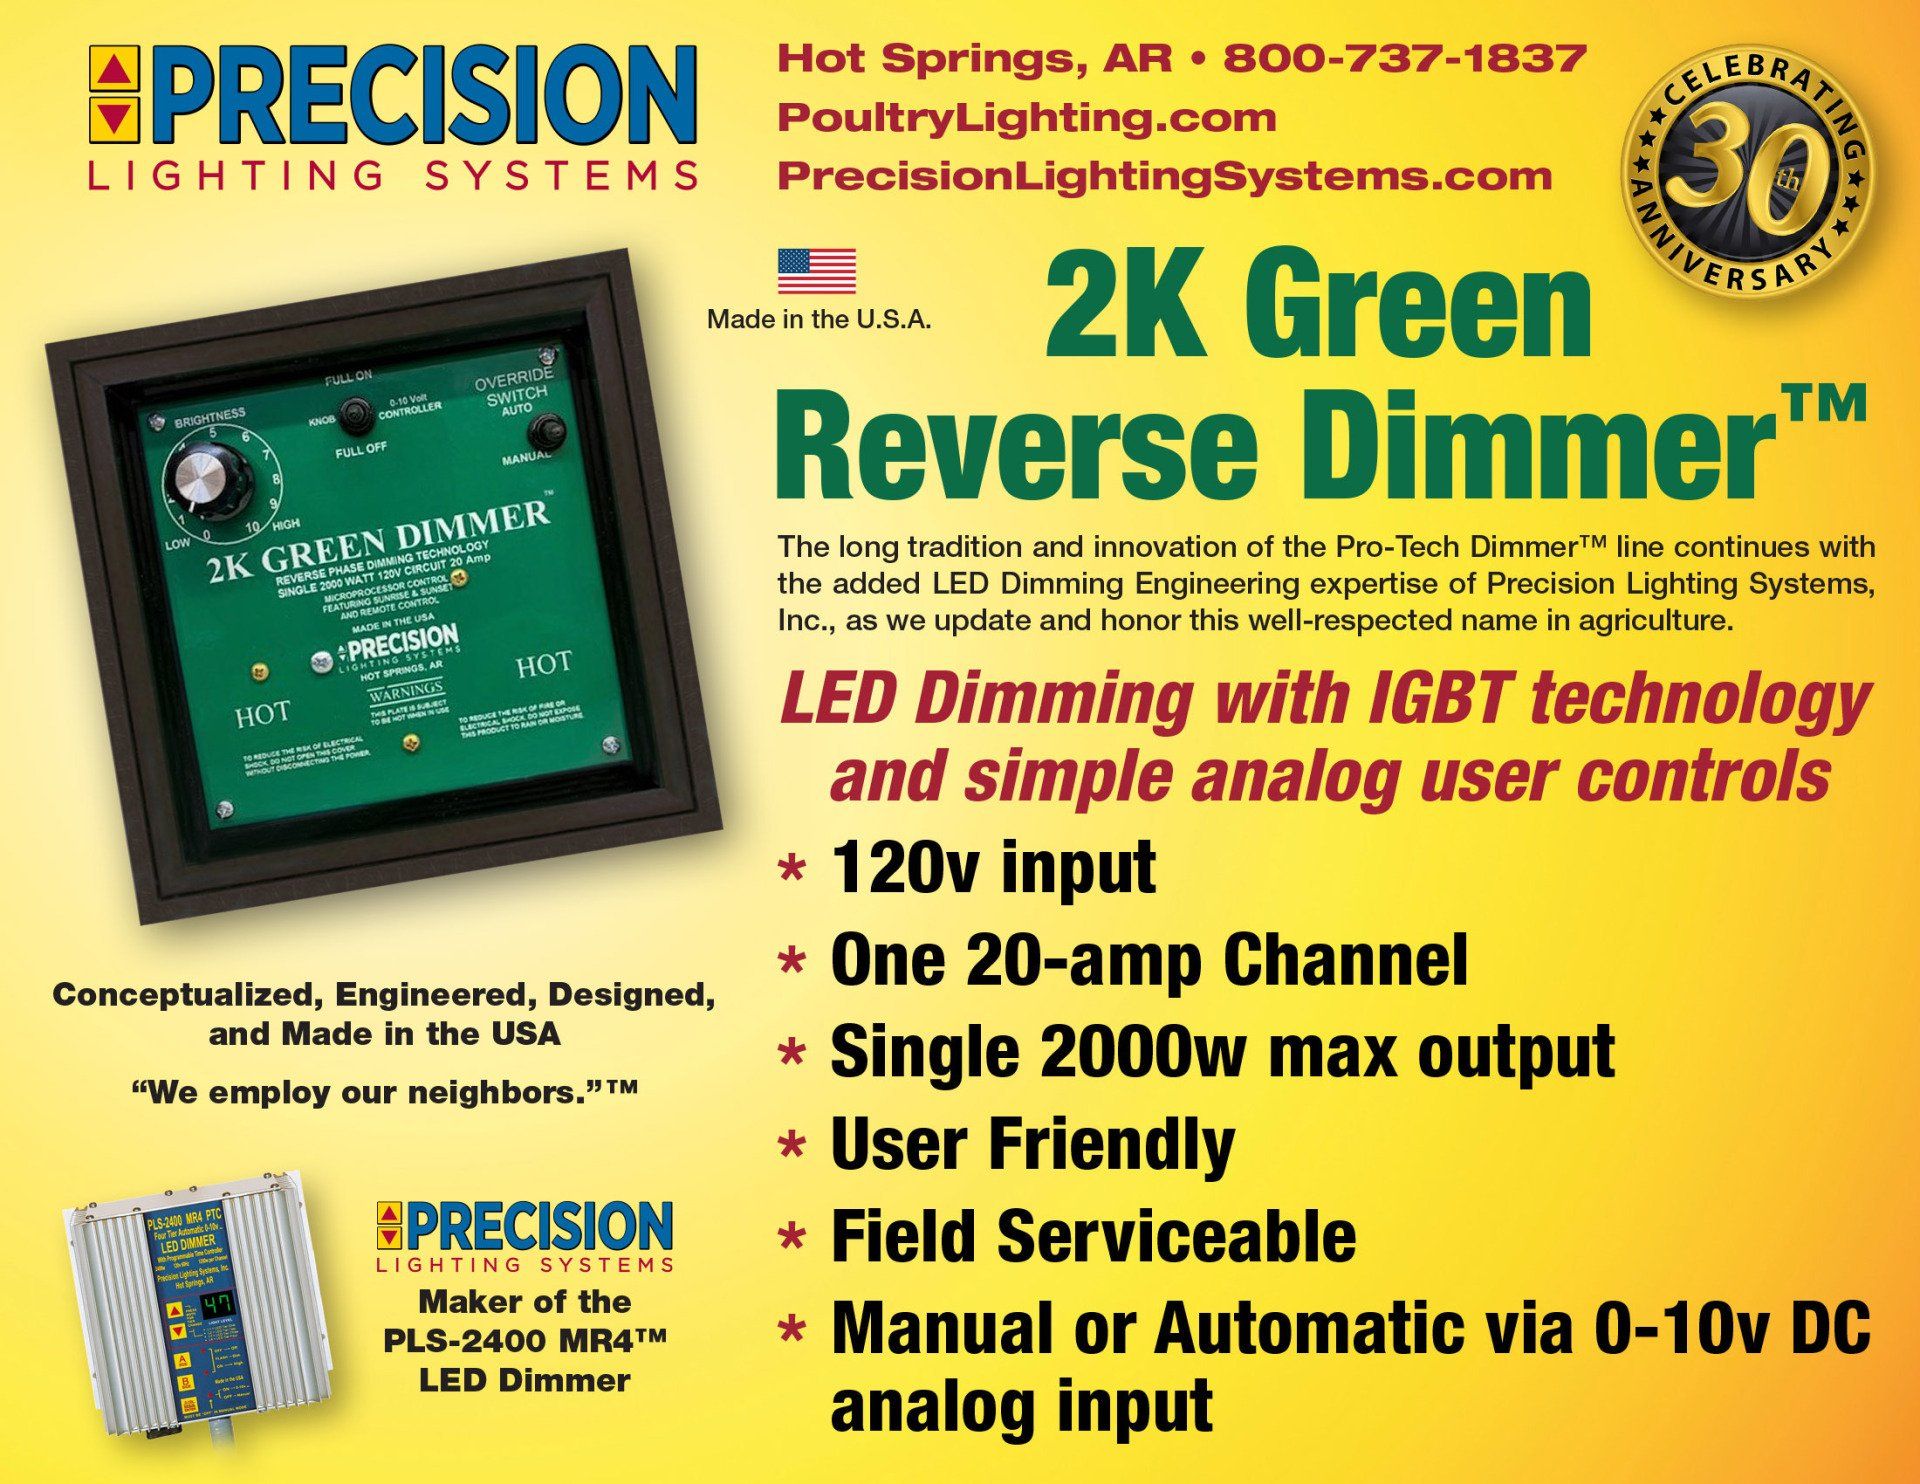 An advertisement for a 2k green reverse dimmer